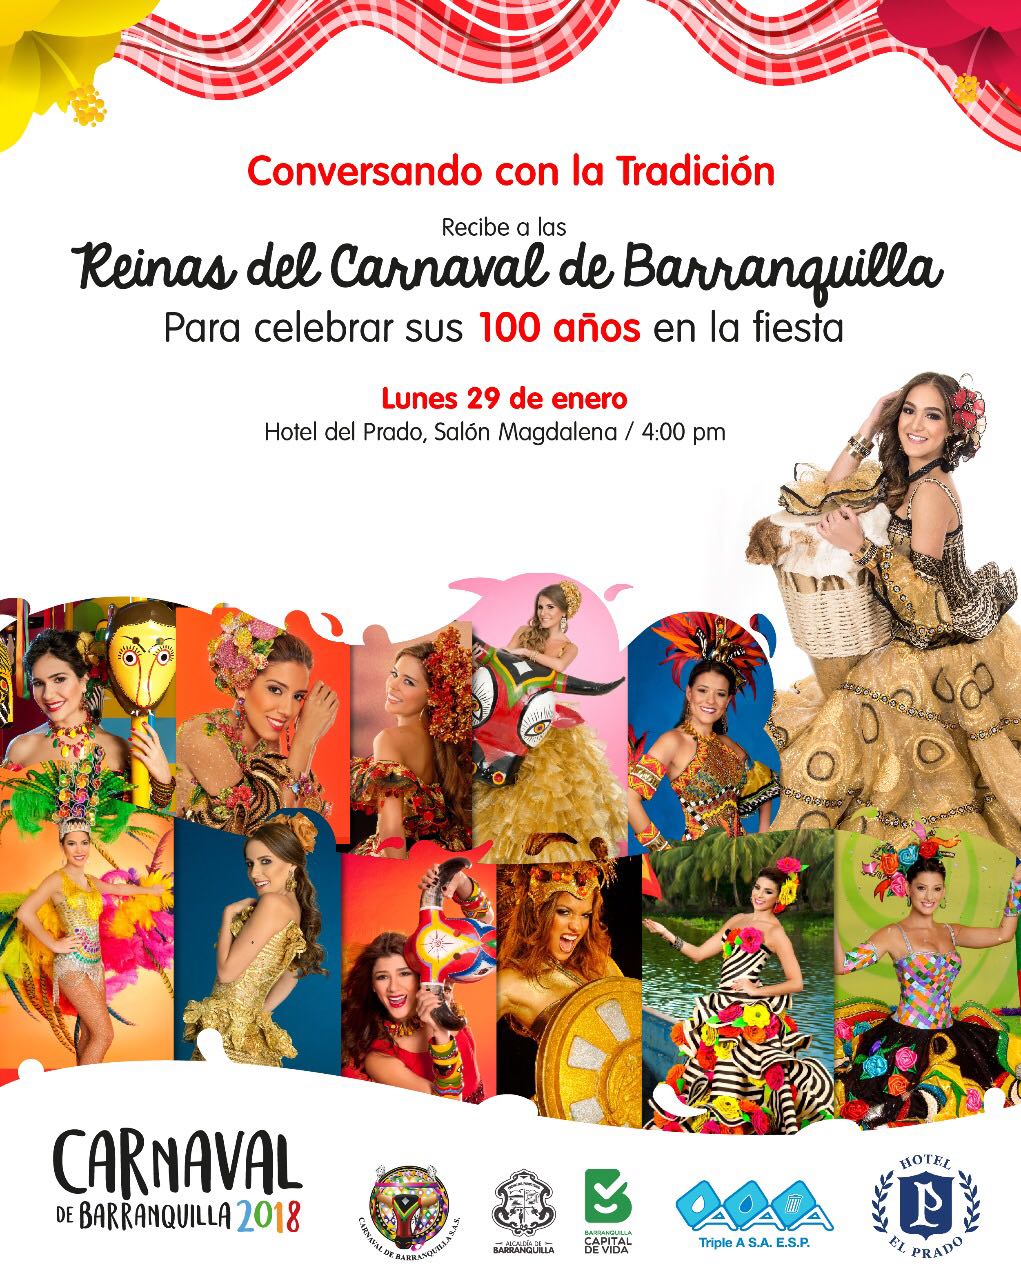 Reinas celebran sus 100 años en el Carnaval de Barranquilla